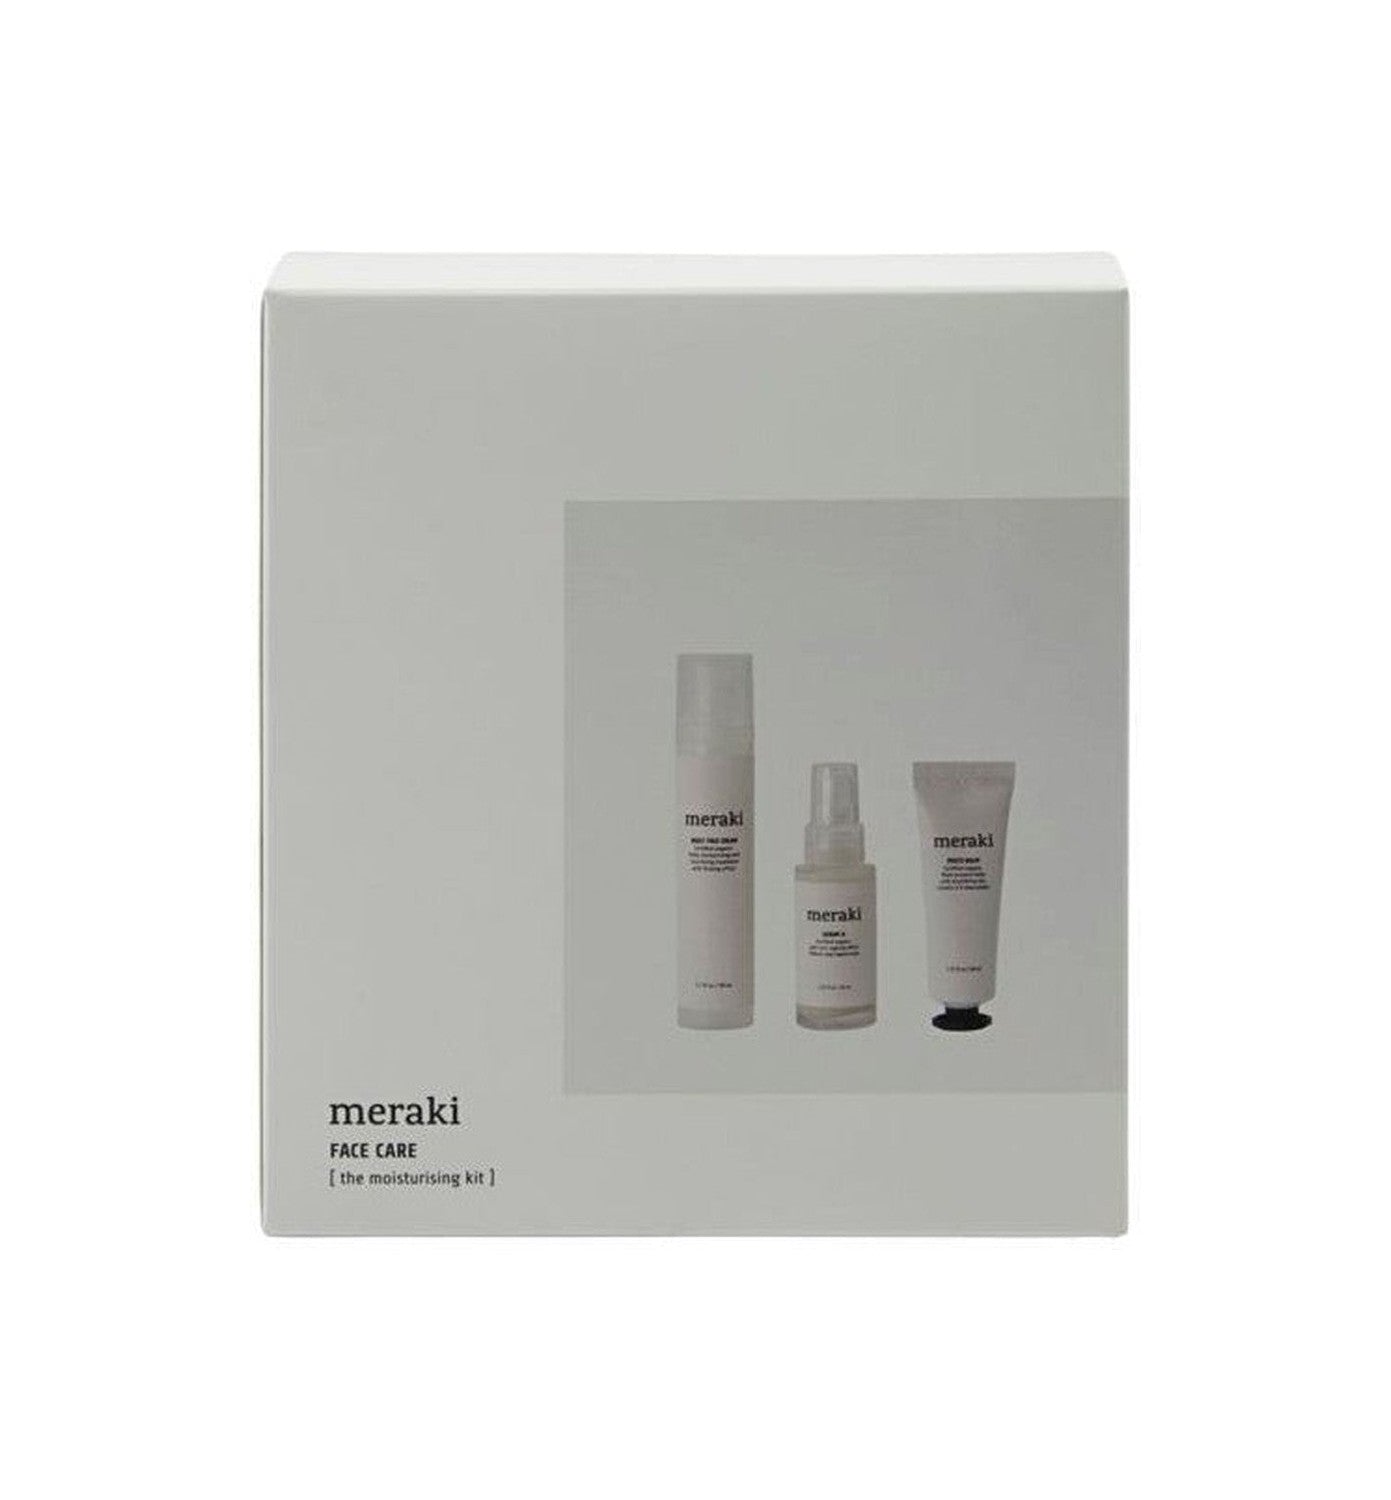 Meraki Gift box, The moisturising kit - Face care